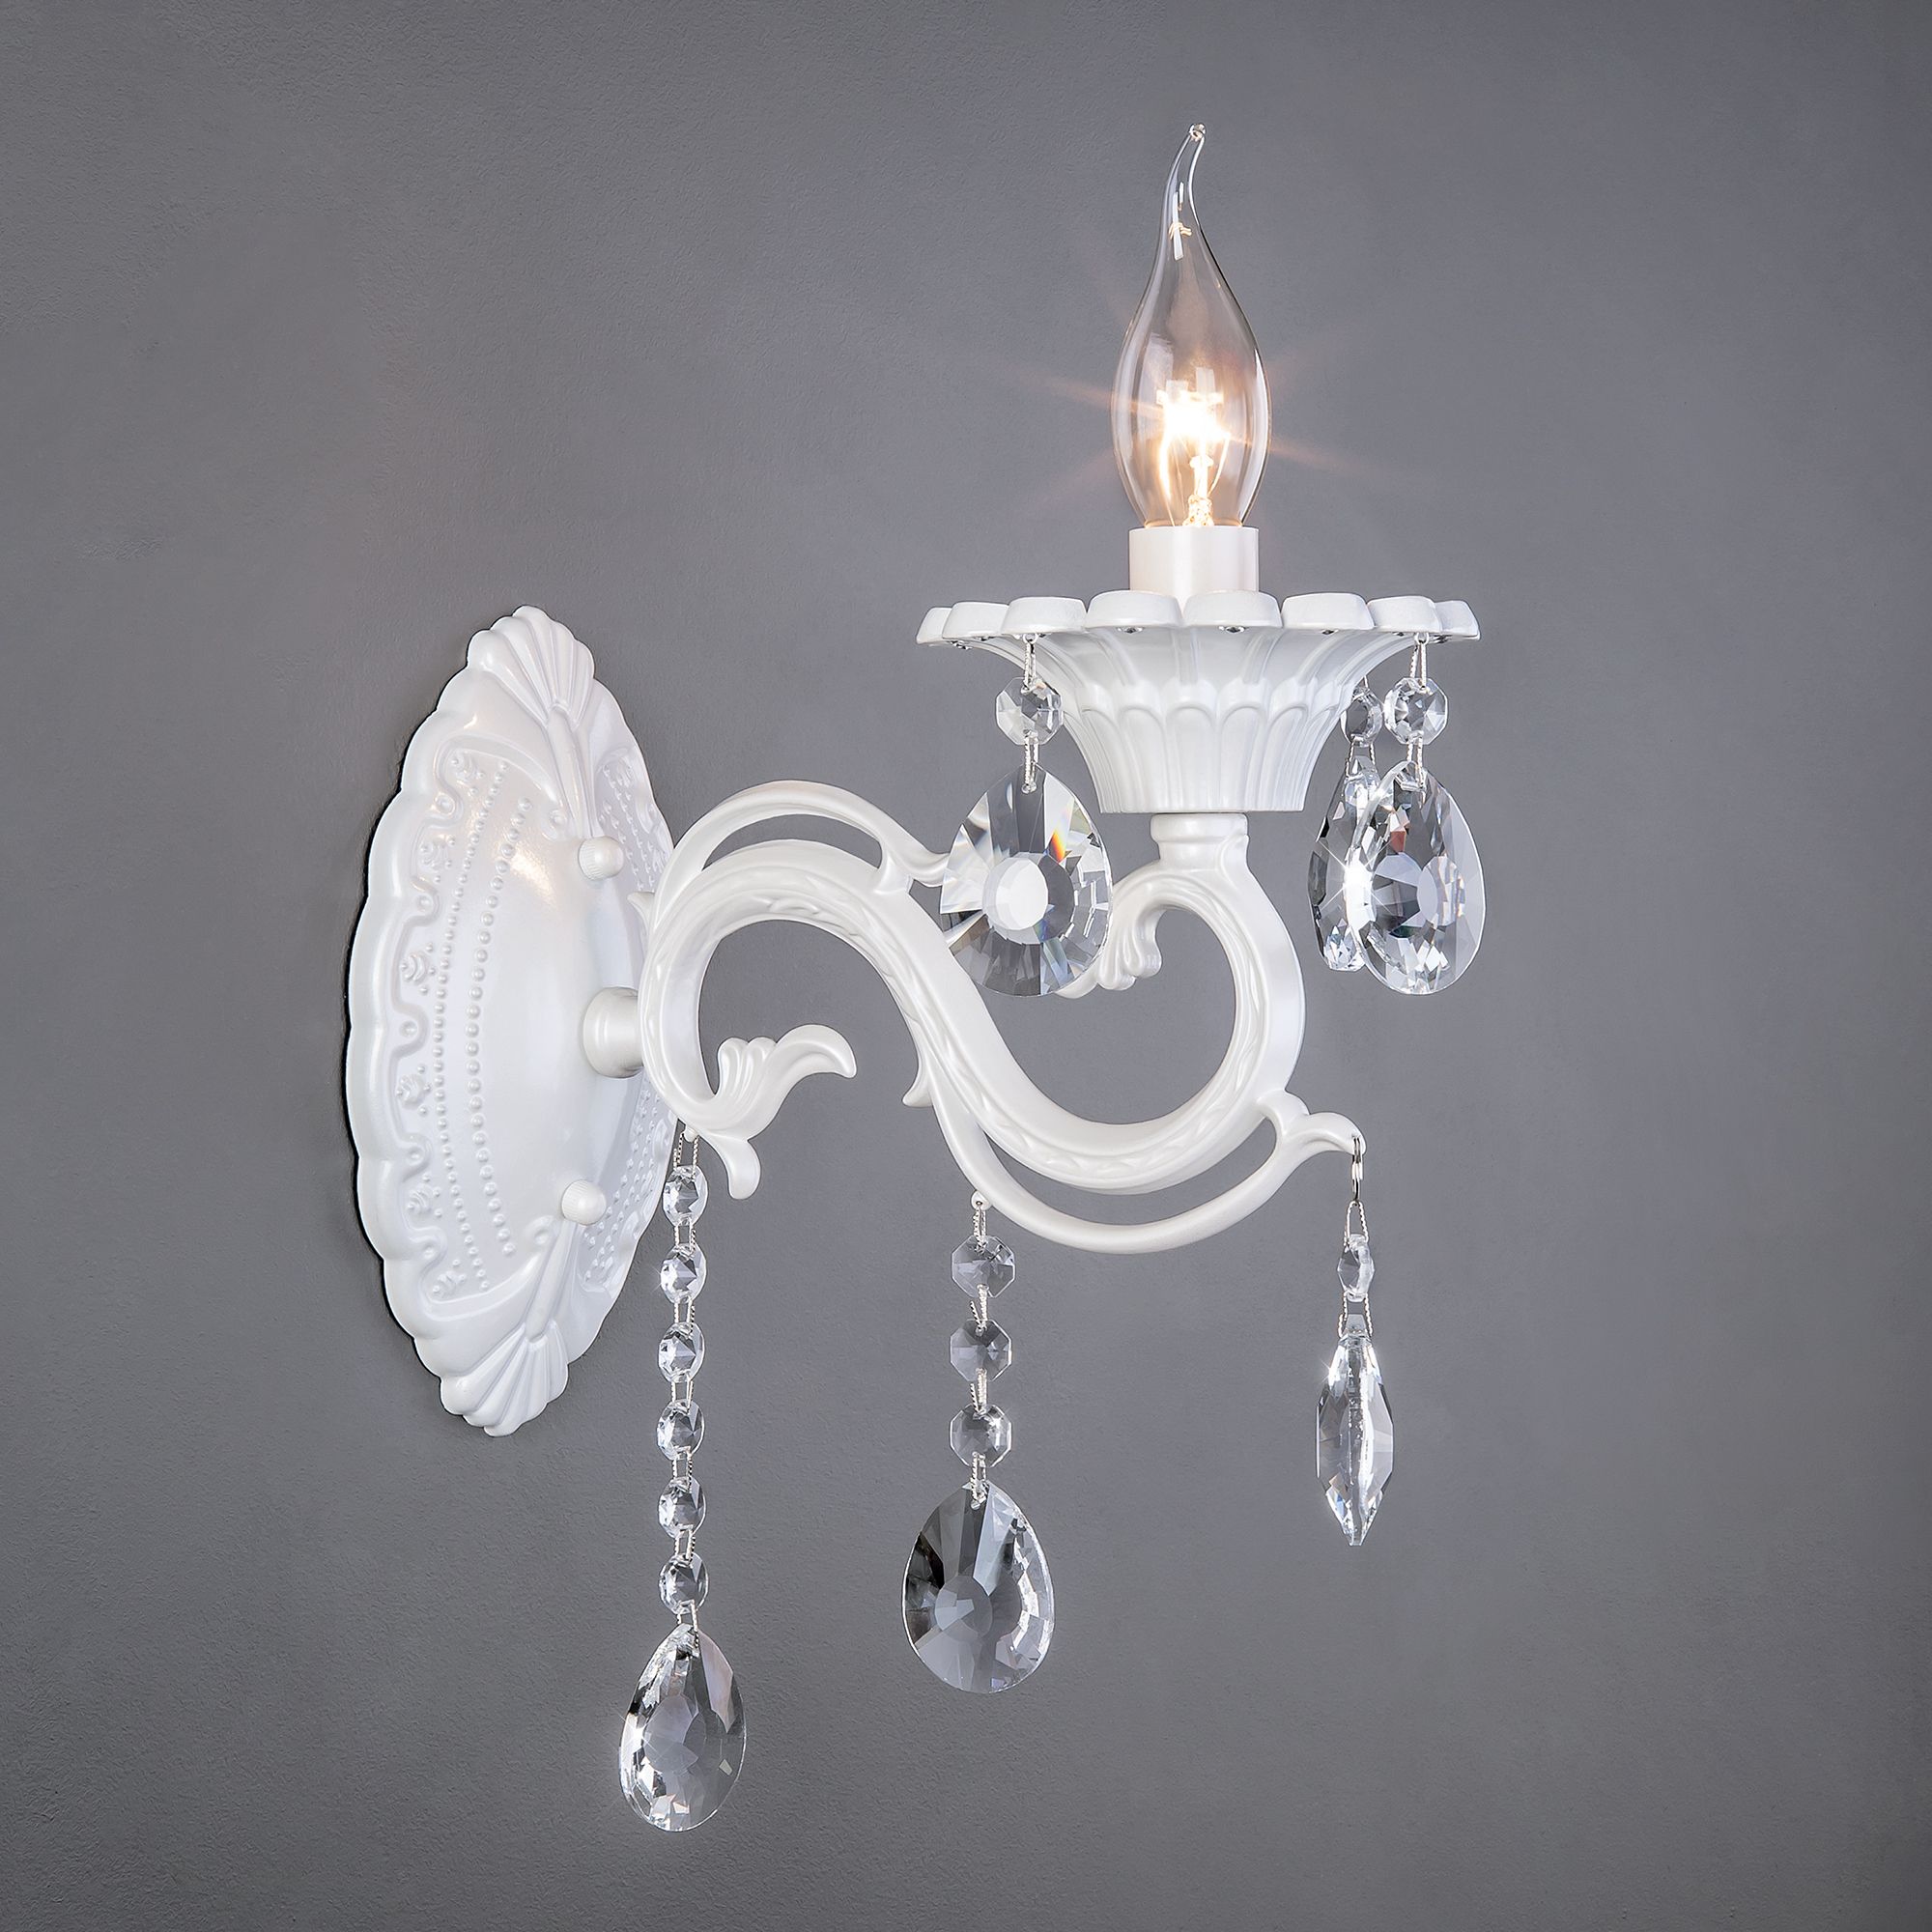 Настенный светильник с хрусталем Bogate's Tivoli 294/1 белый. Фото 1